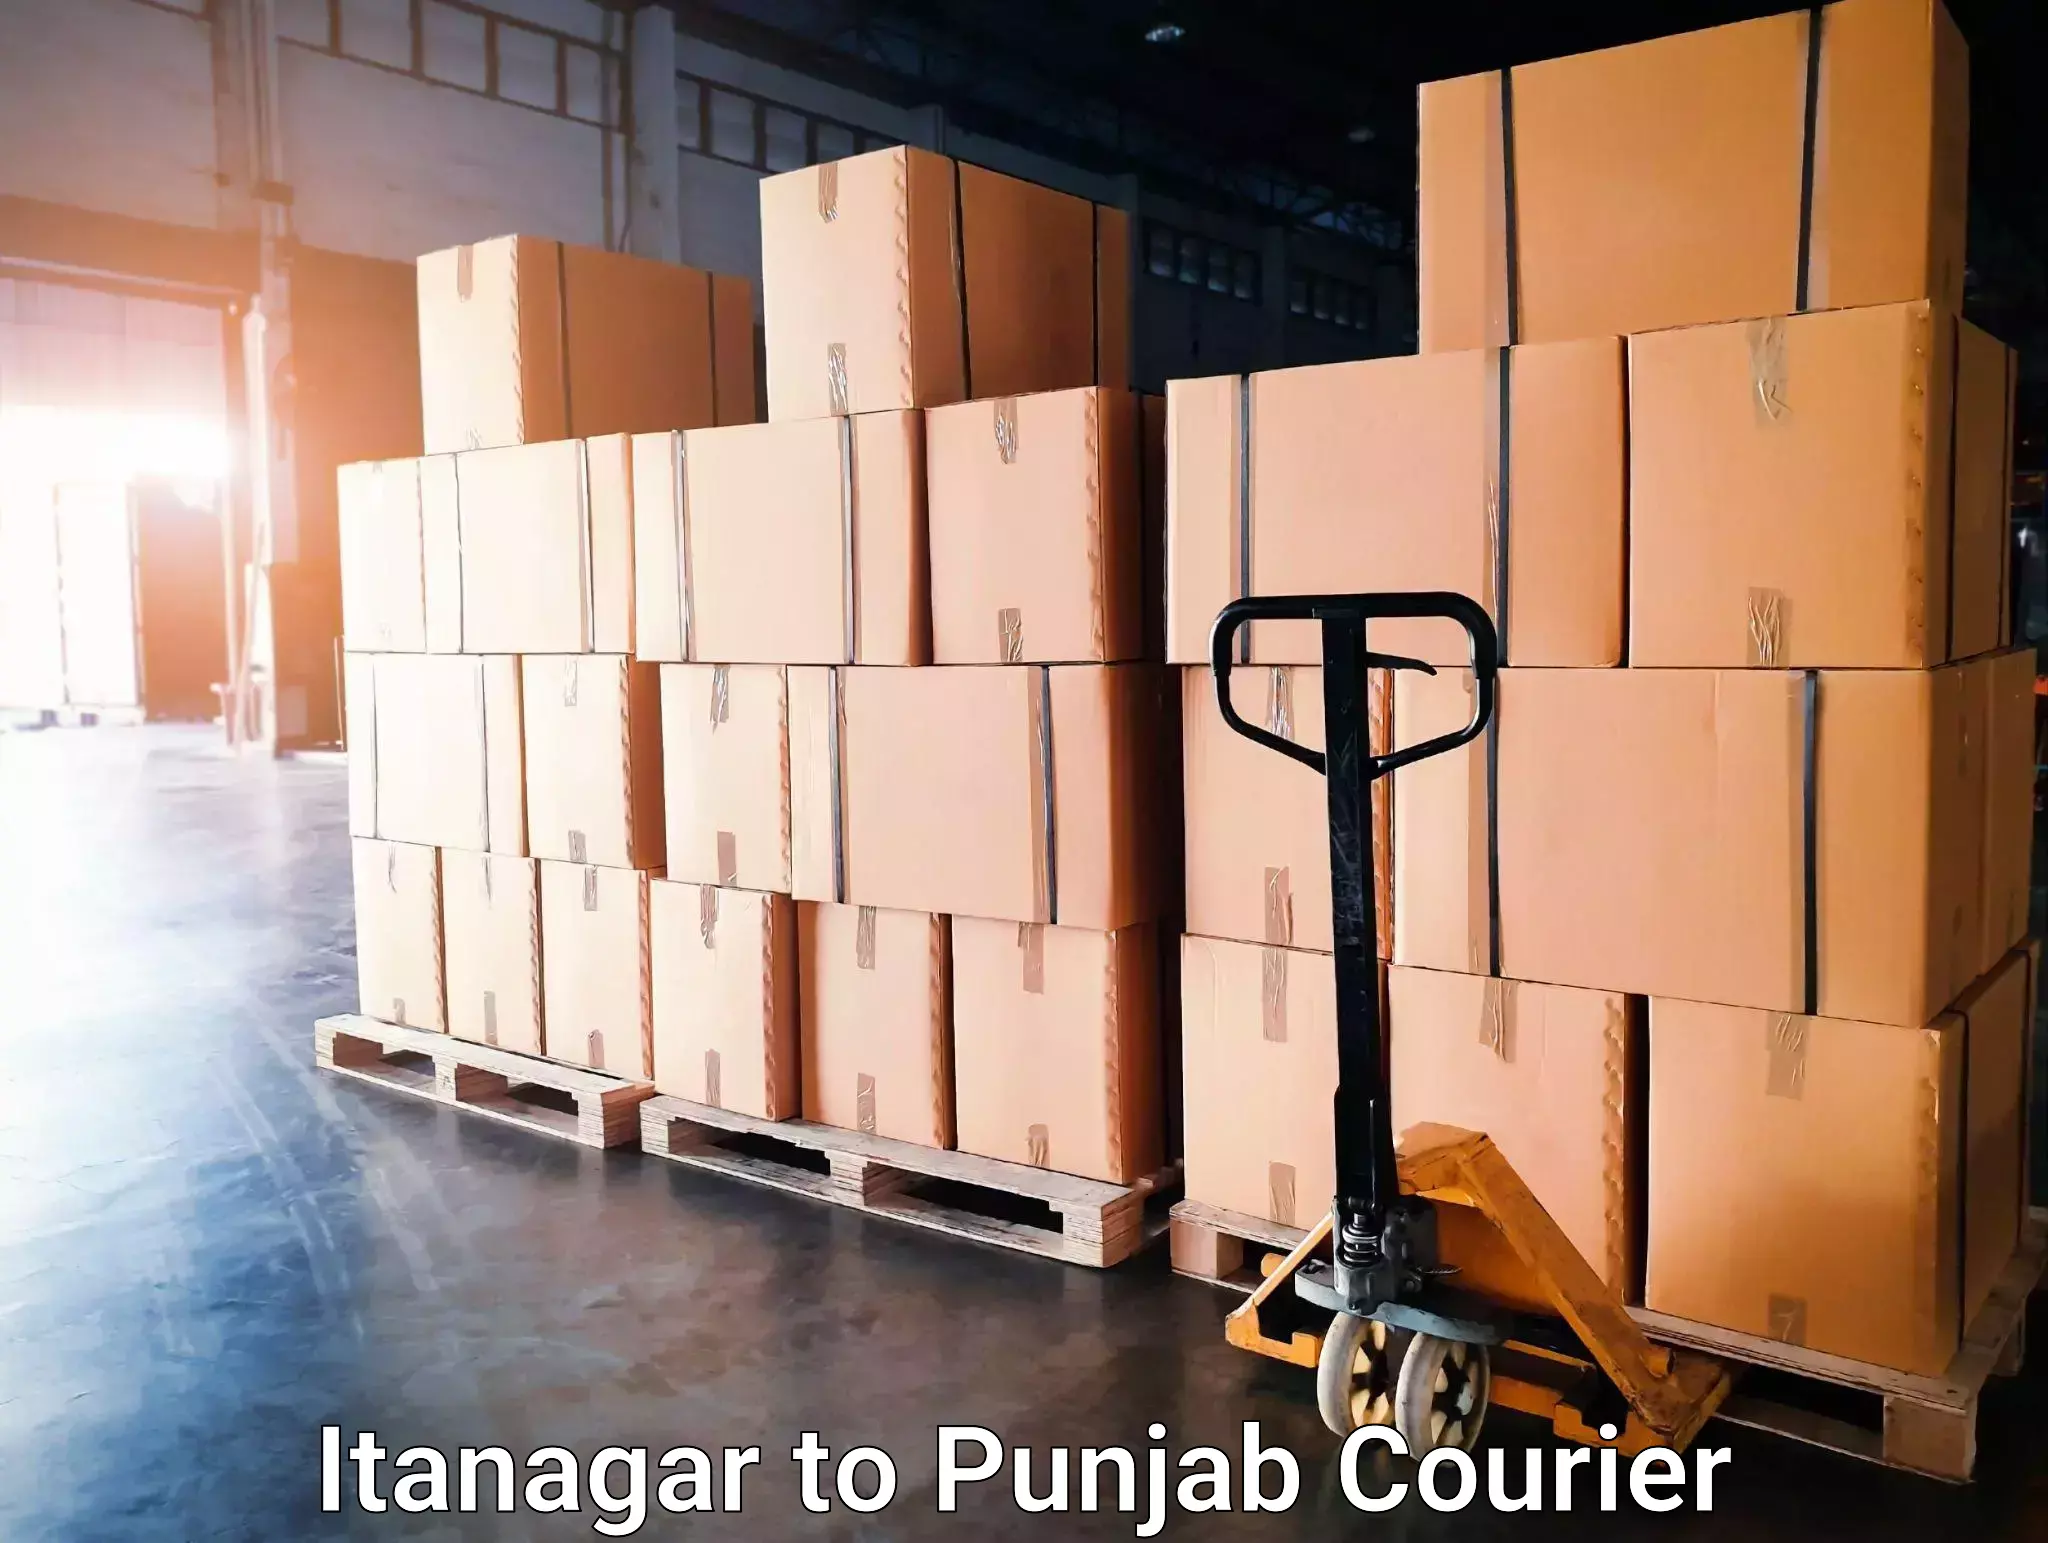 High-speed parcel service Itanagar to Faridkot